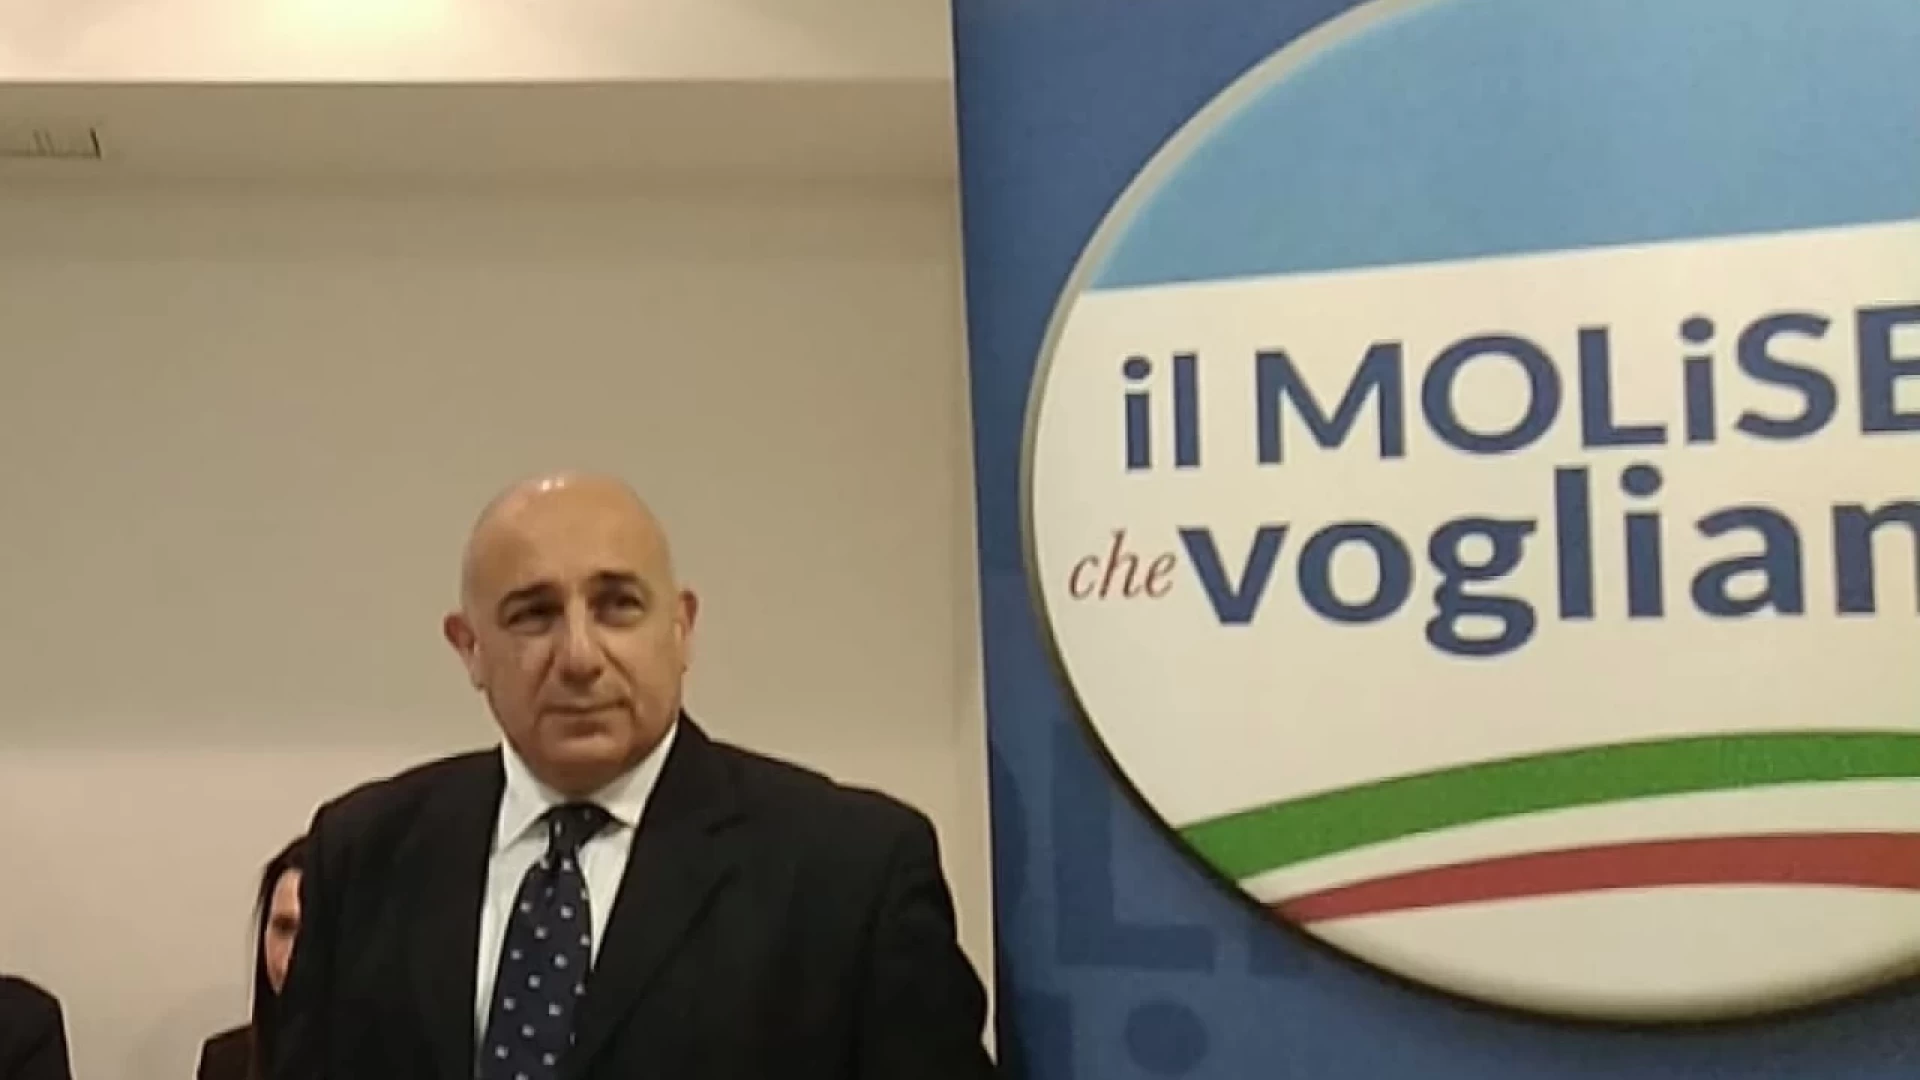 Elezioni regionali 2023, parla Claudio Pian del “Molise che vogliamo”. “Roberti la scelta migliore che si potesse compiere”.